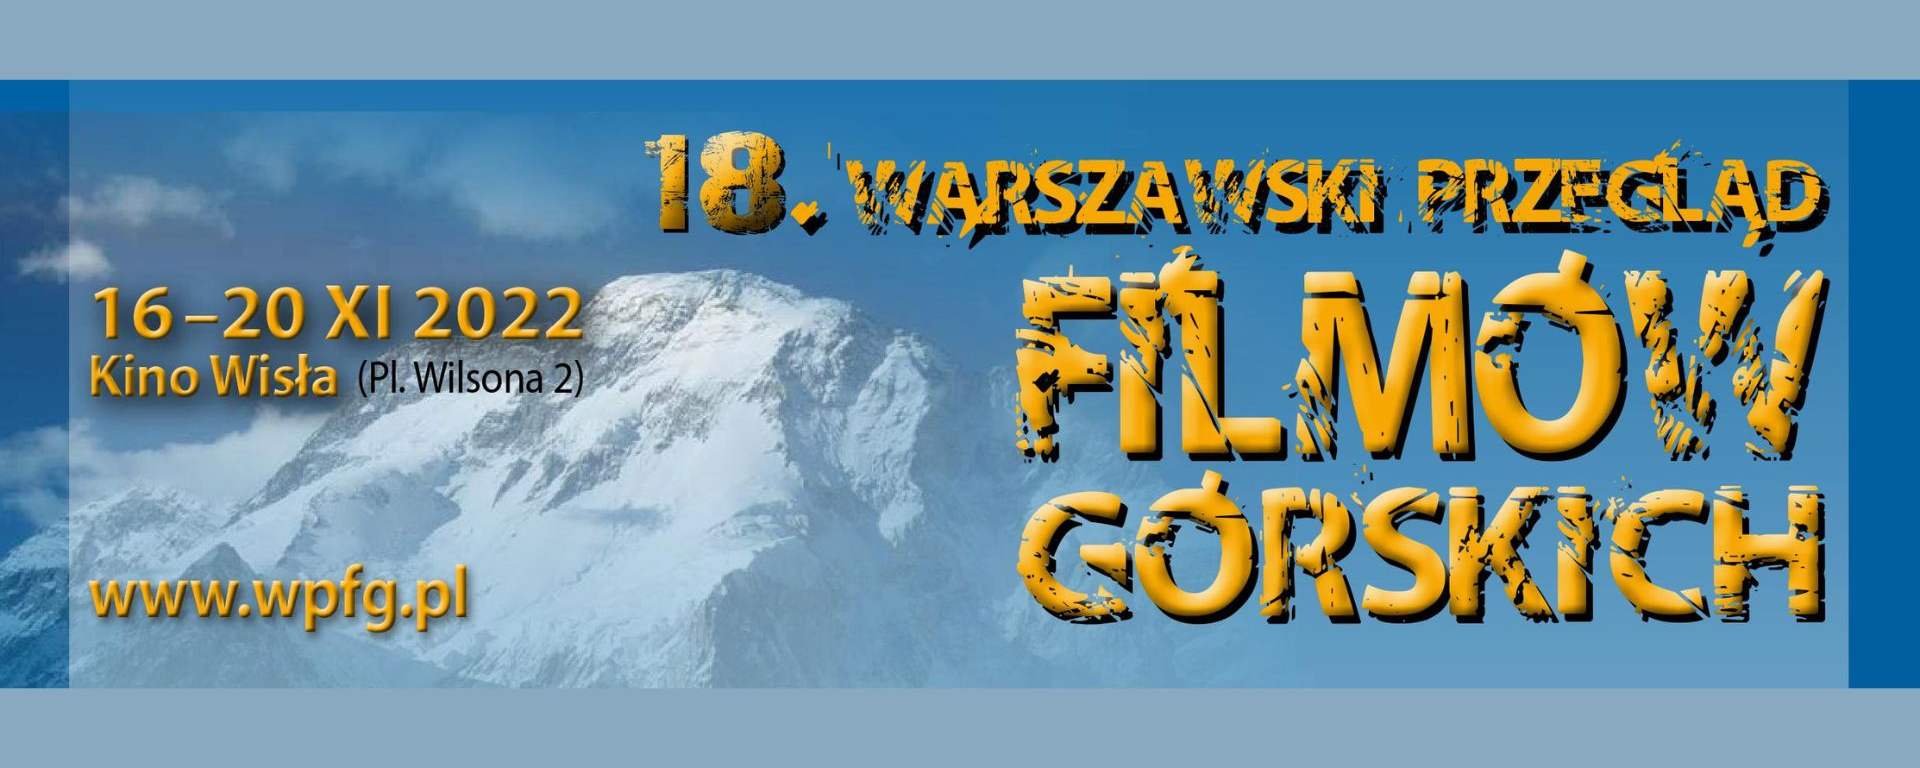 18. Warszawski Przegląd Filmów Górskich